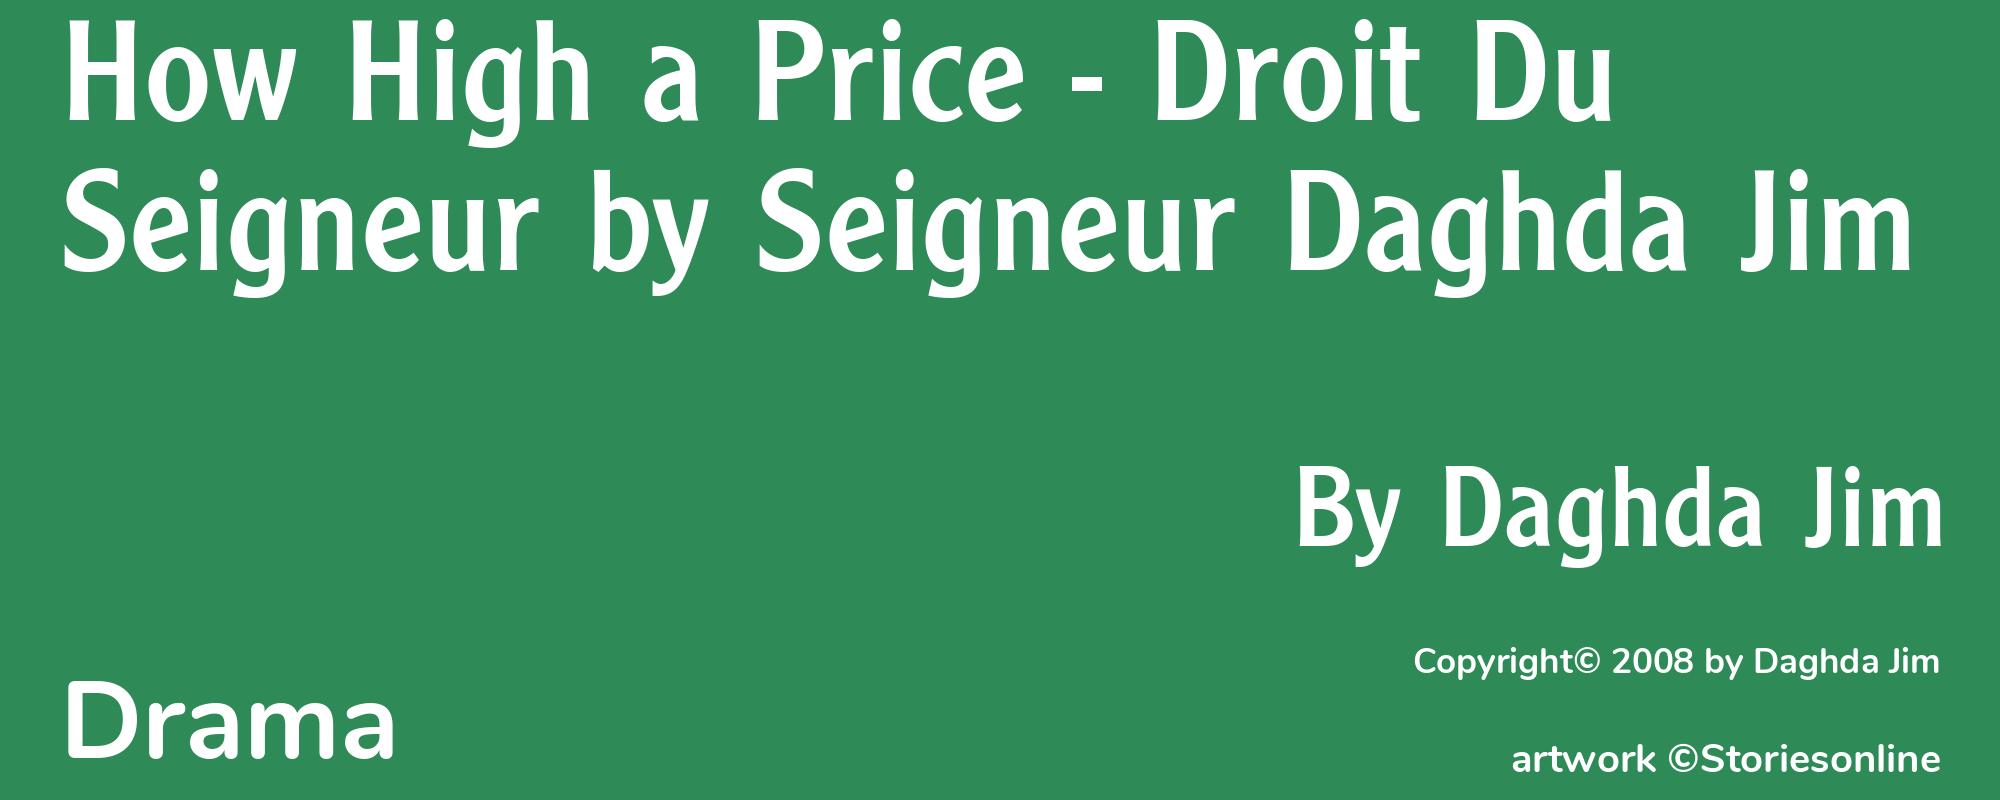 How High a Price - Droit Du Seigneur by Seigneur Daghda Jim - Cover